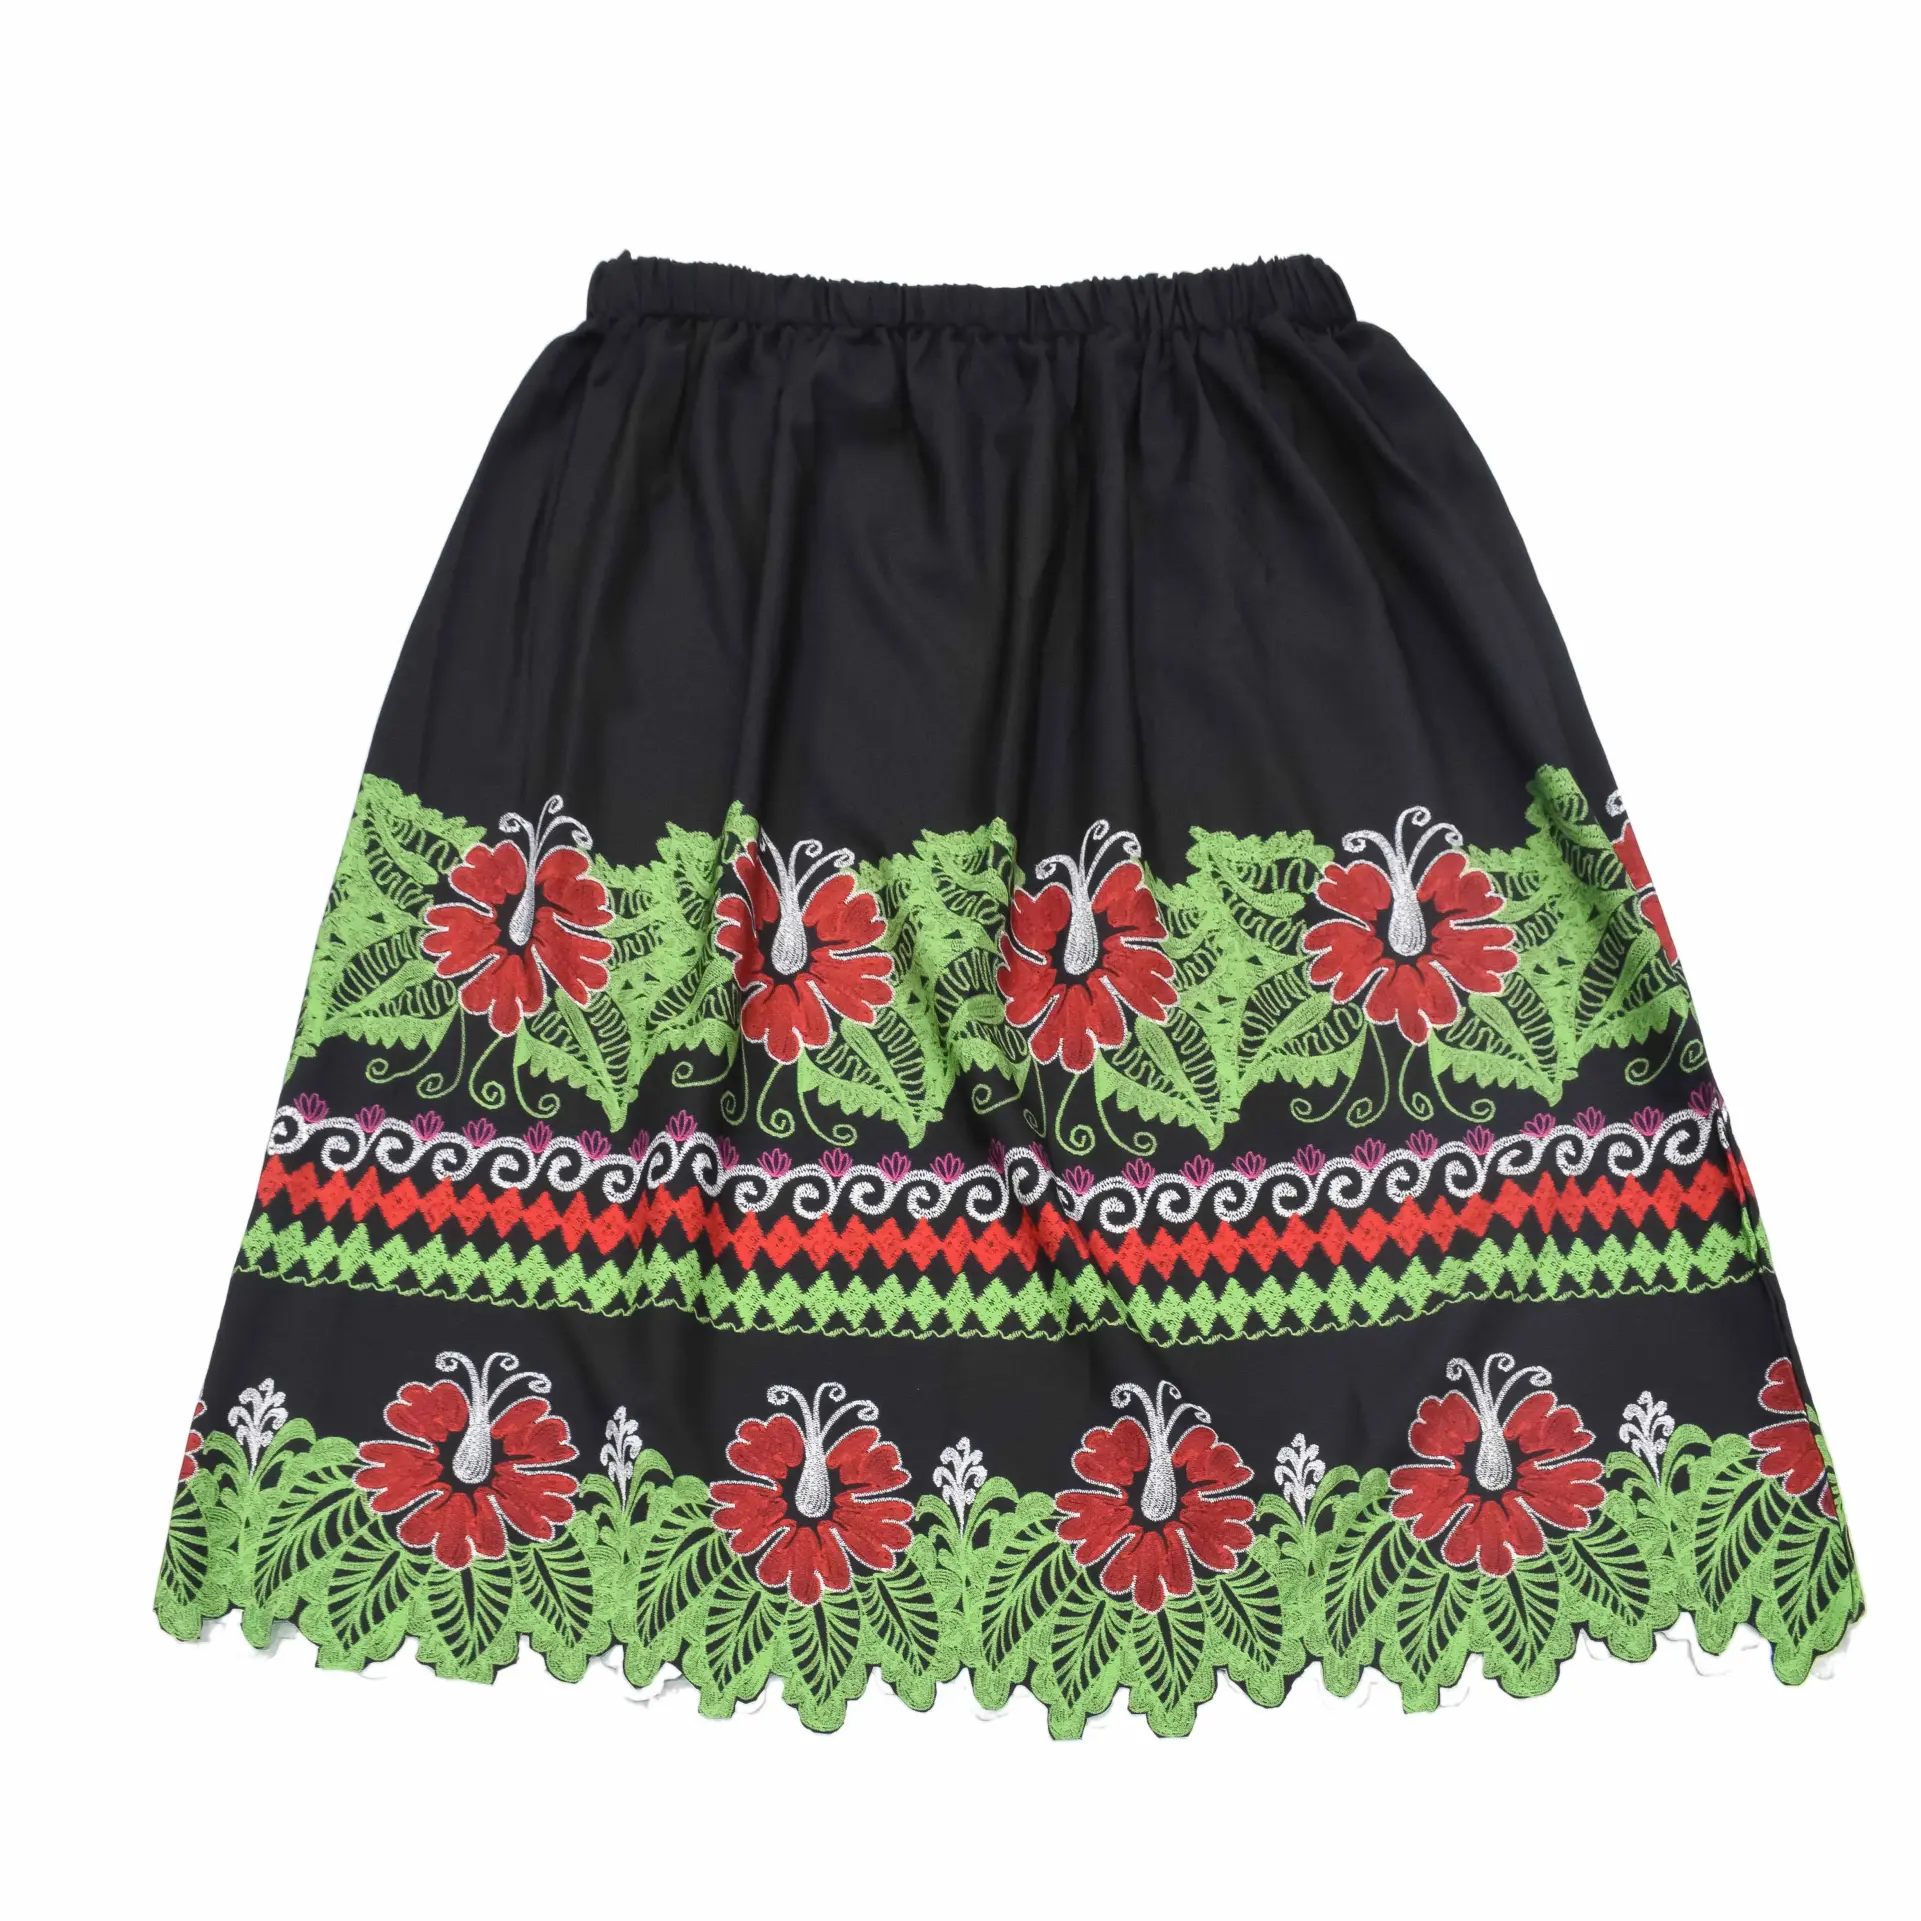 महिलाओं के लिए कस्टम मेड स्कर्ट उच्च गुणवत्ता वाली महिलाओं की कैज़ुअल स्कर्ट नई शैली की महिला स्कर्ट सस्ते दामों पर पाकिस्तान में निर्मित